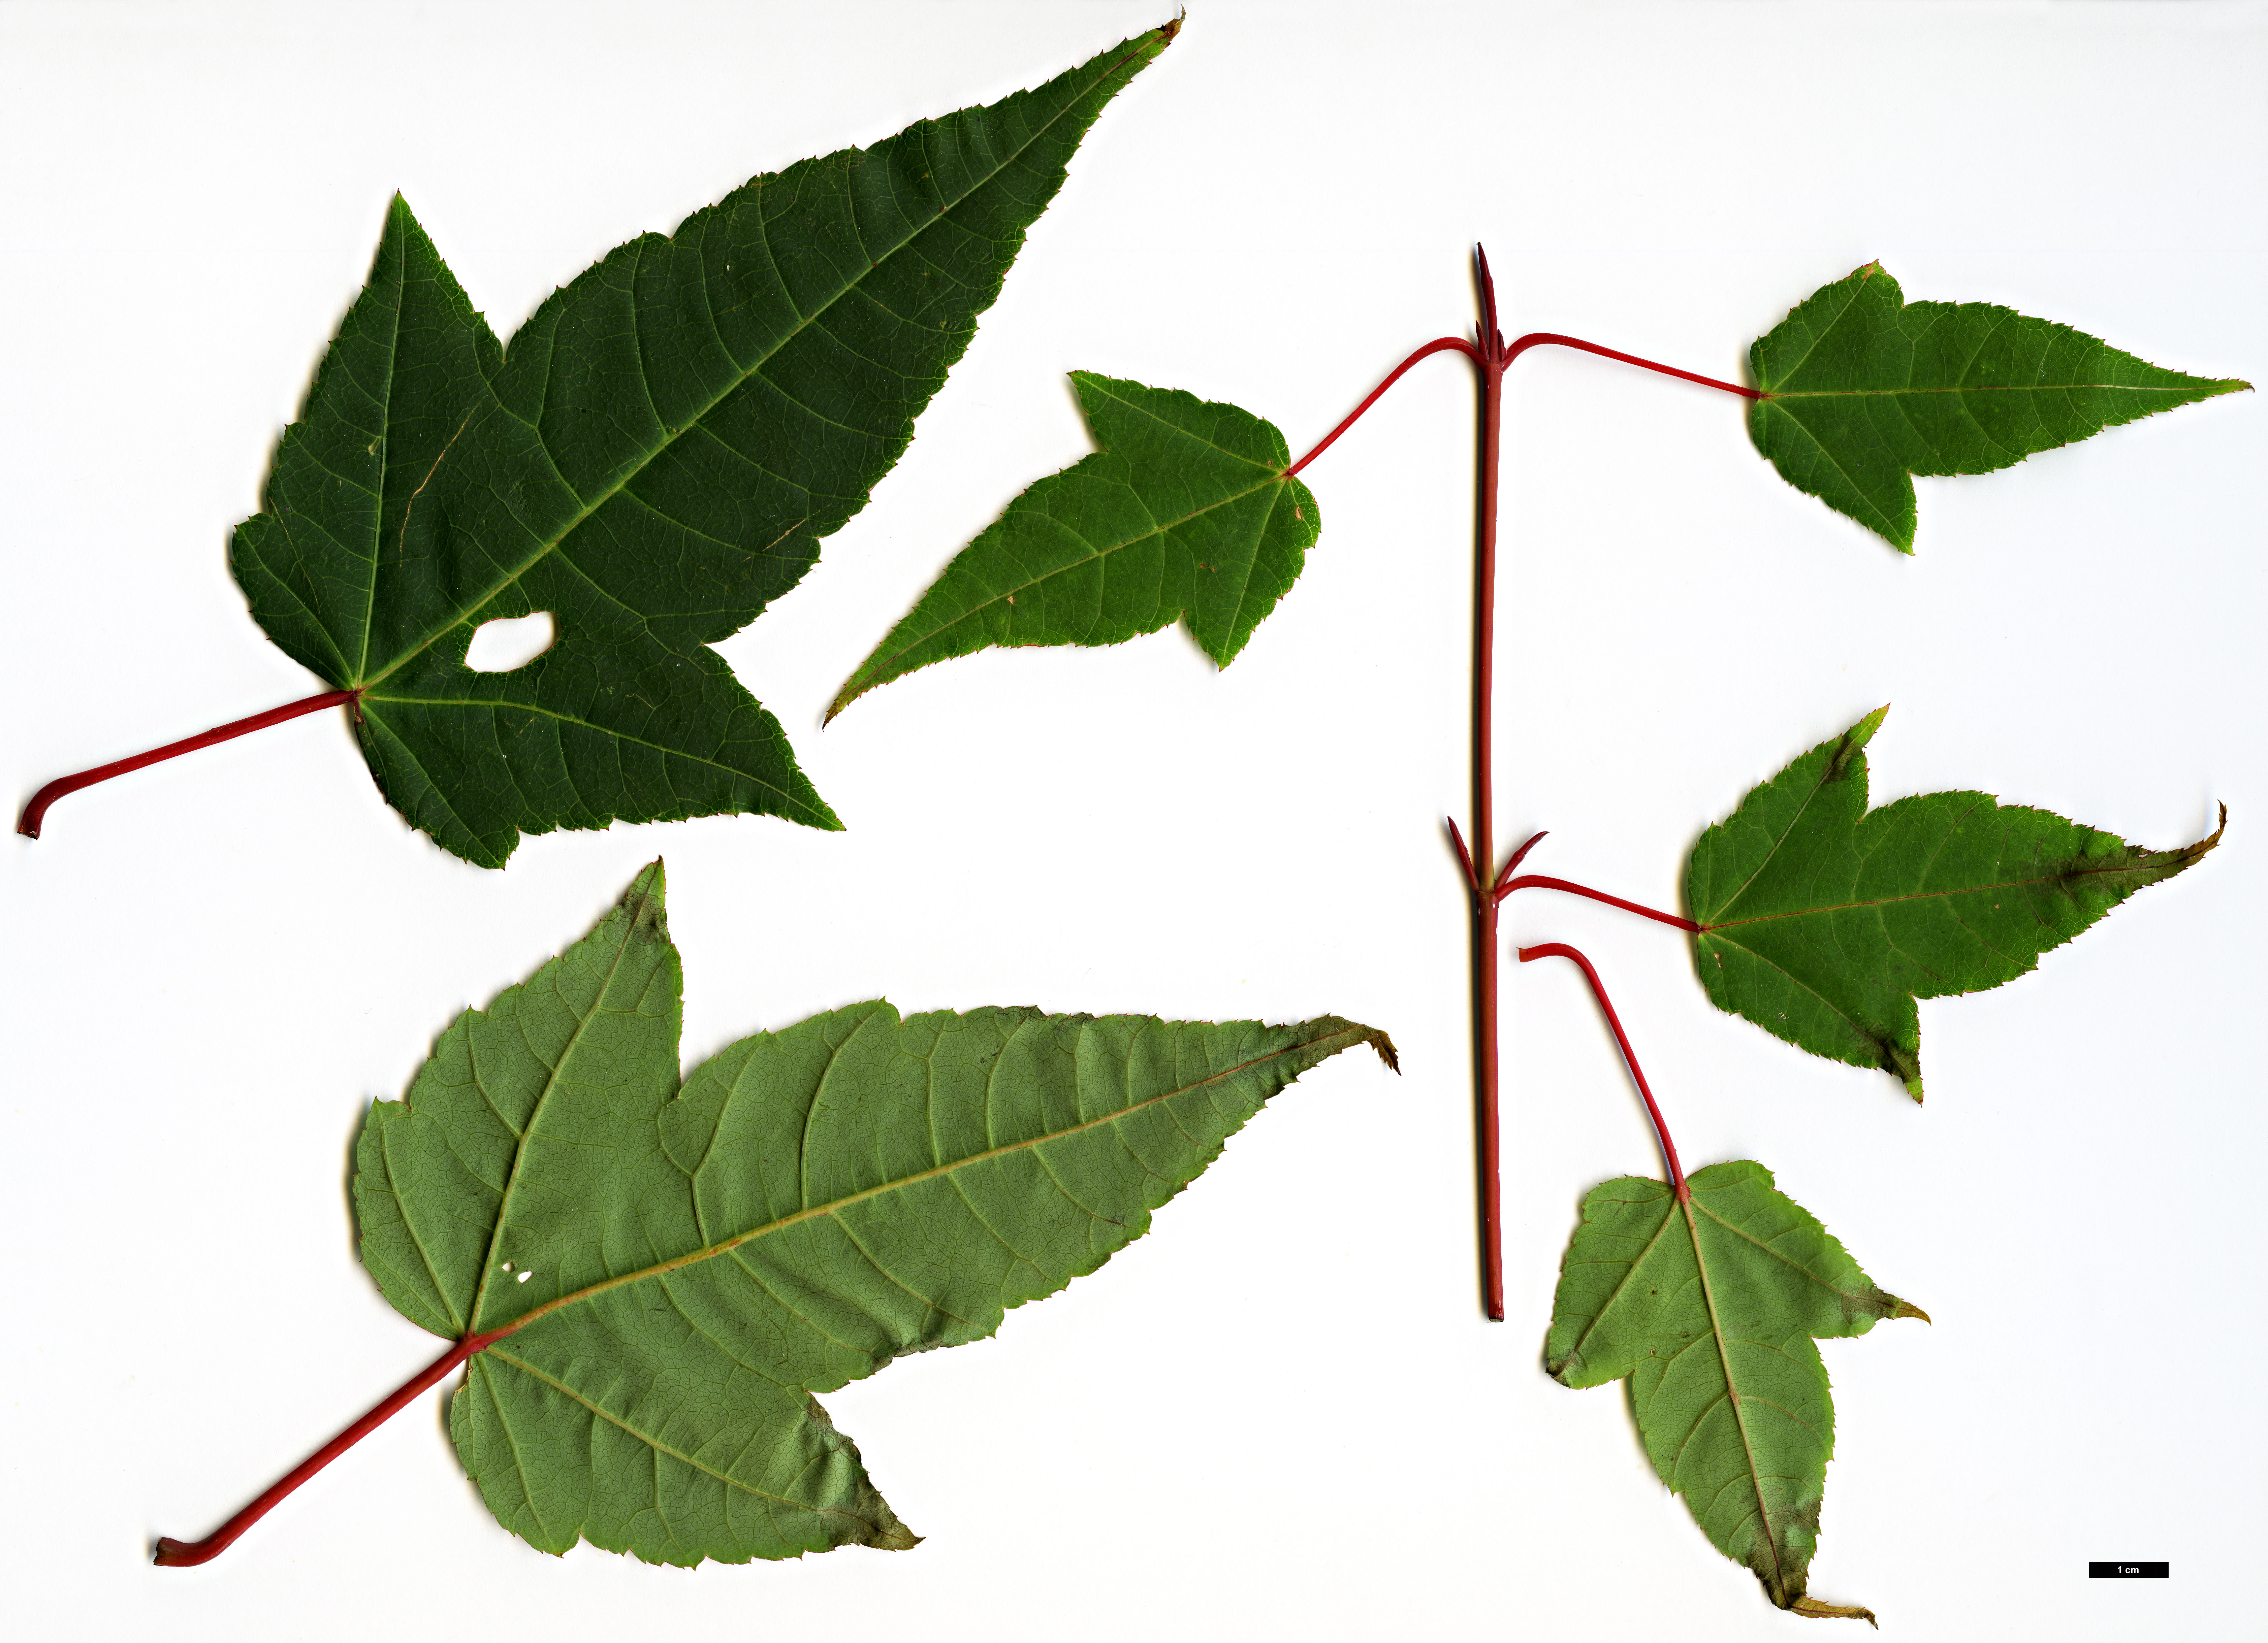 High resolution image: Family: Sapindaceae - Genus: Acer - Taxon: pectinatum - SpeciesSub: subsp. taronense